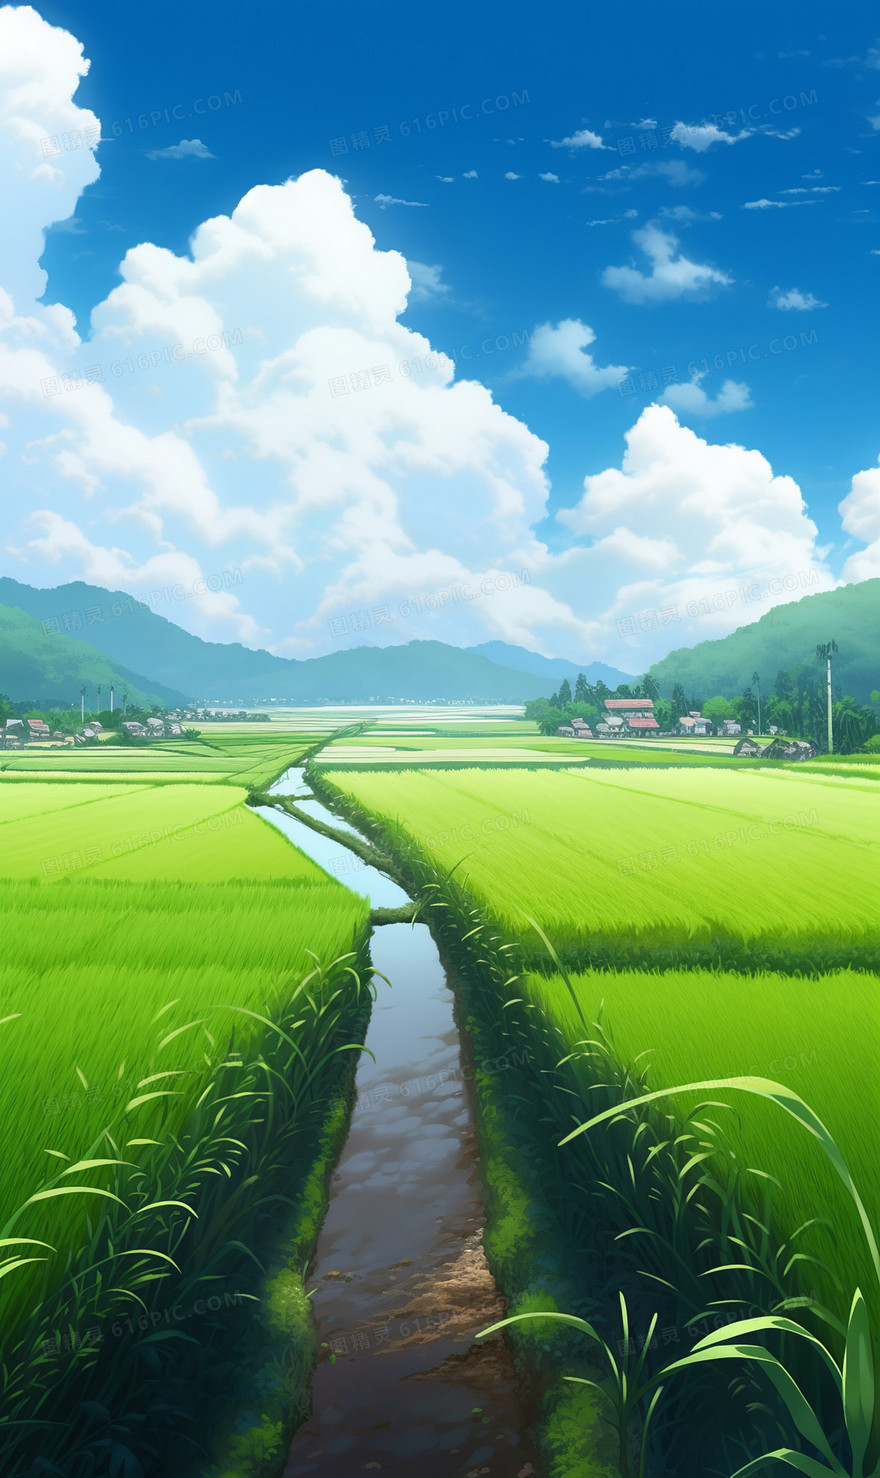 竖版整齐的绿色稻田和蓝天白云